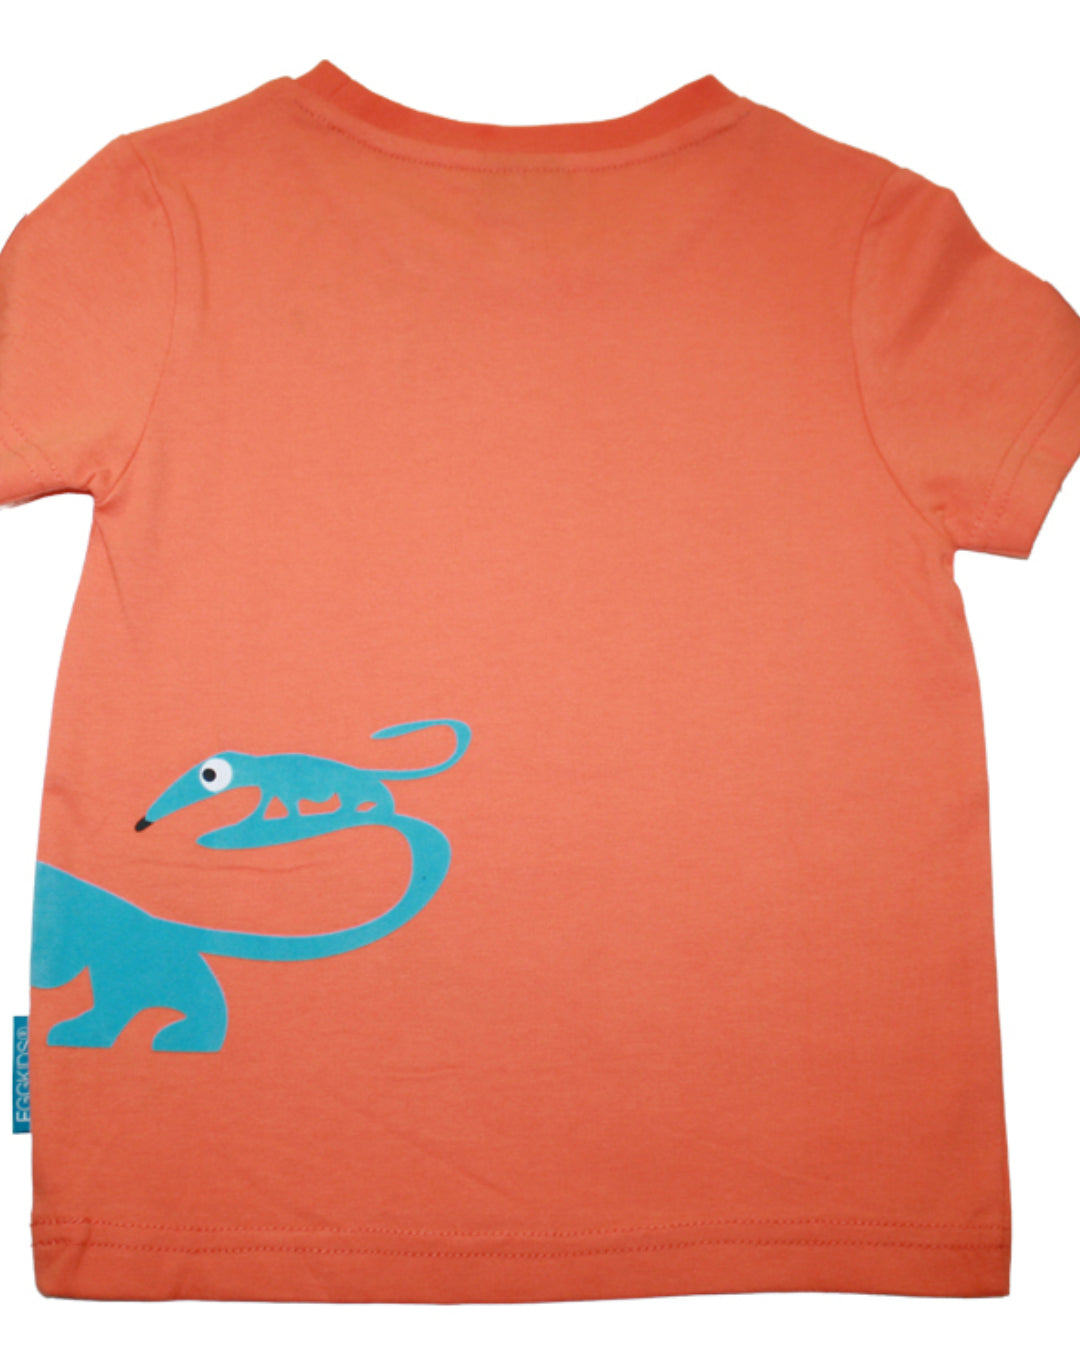 T-Shirt in Orange mit kleinem blauen Dackel Anton